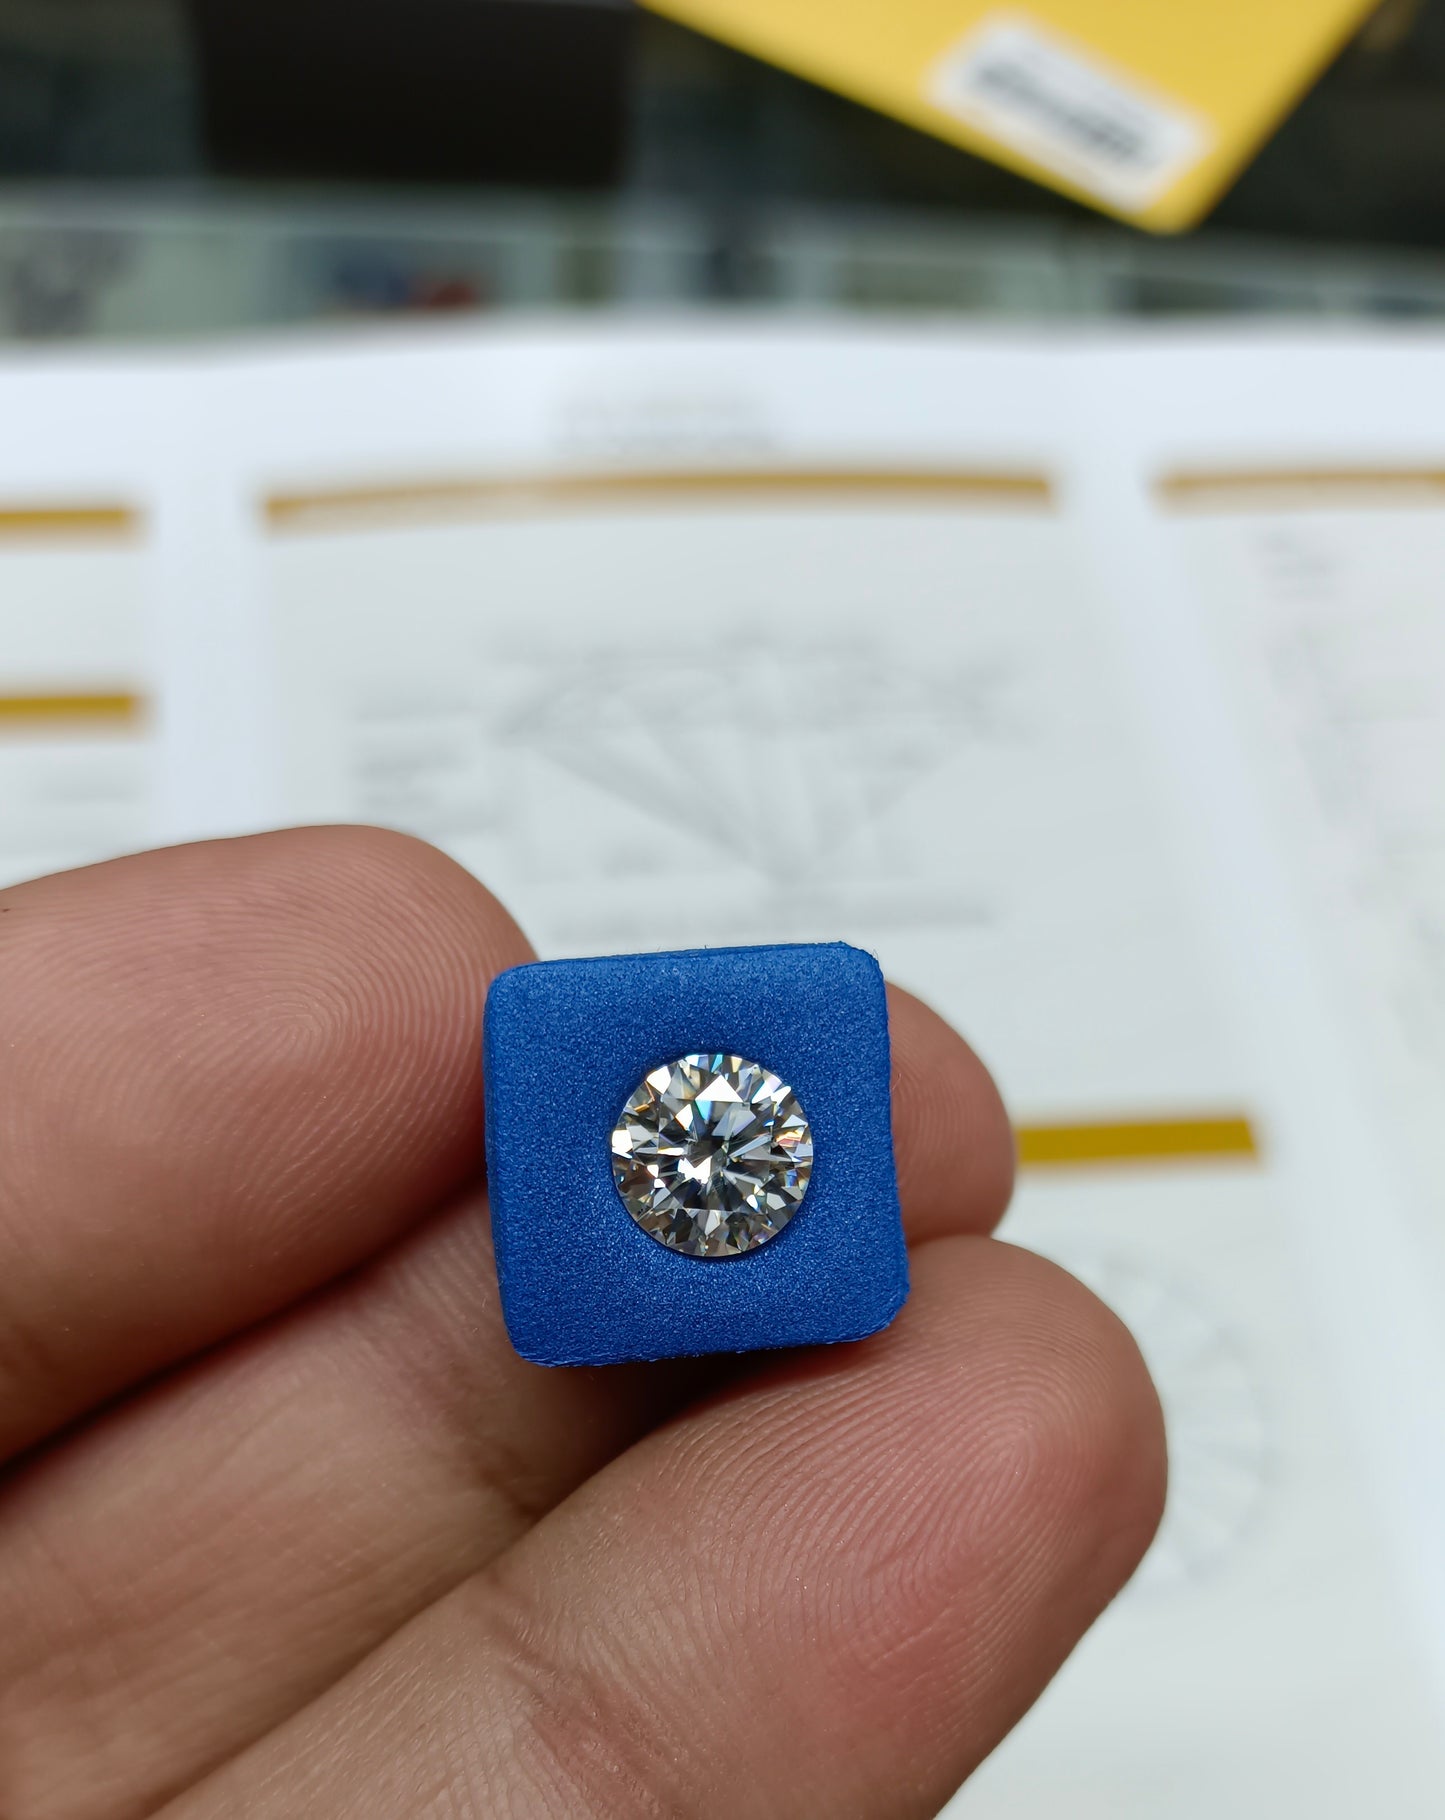 Moissanite Diamond 2 CRT (GRA Certified)